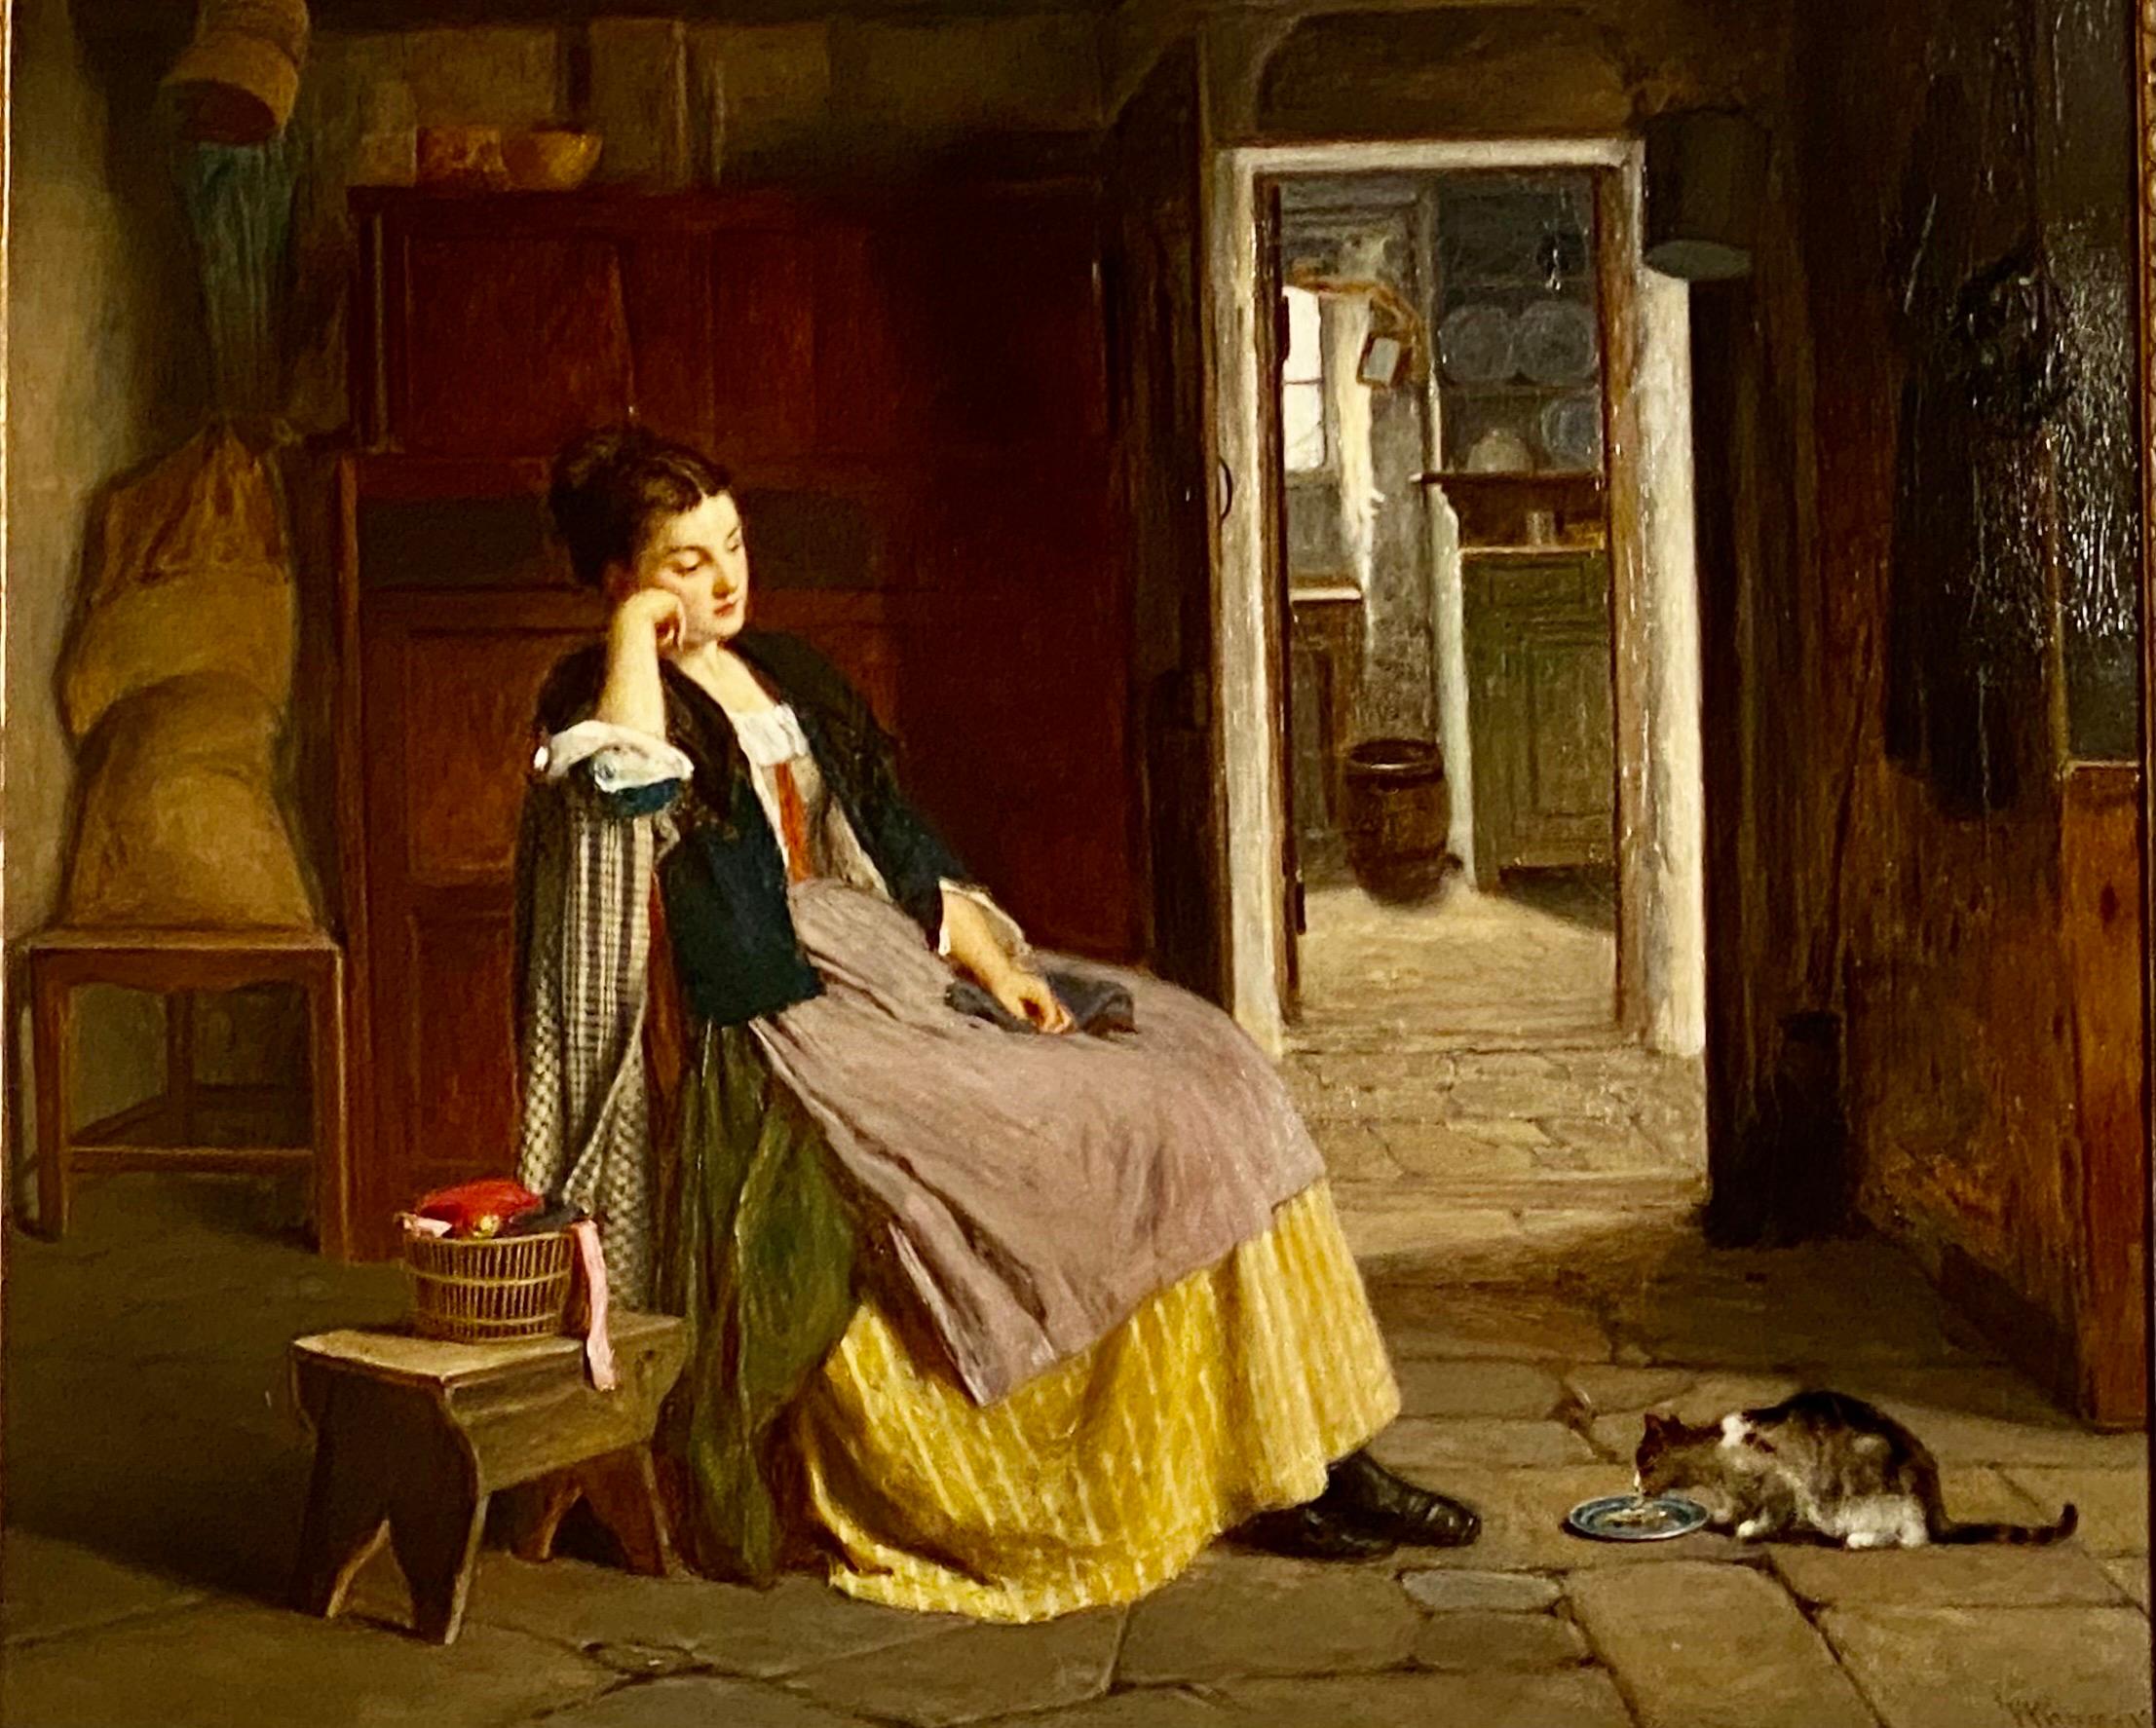 Une étude habile d'une femme par le peintre de genre victorien Haynes King (1831-1904).
À la fin du XIXe siècle, King était très apprécié pour ses représentations des foyers quotidiens de la classe ouvrière. Des tableaux tels que 